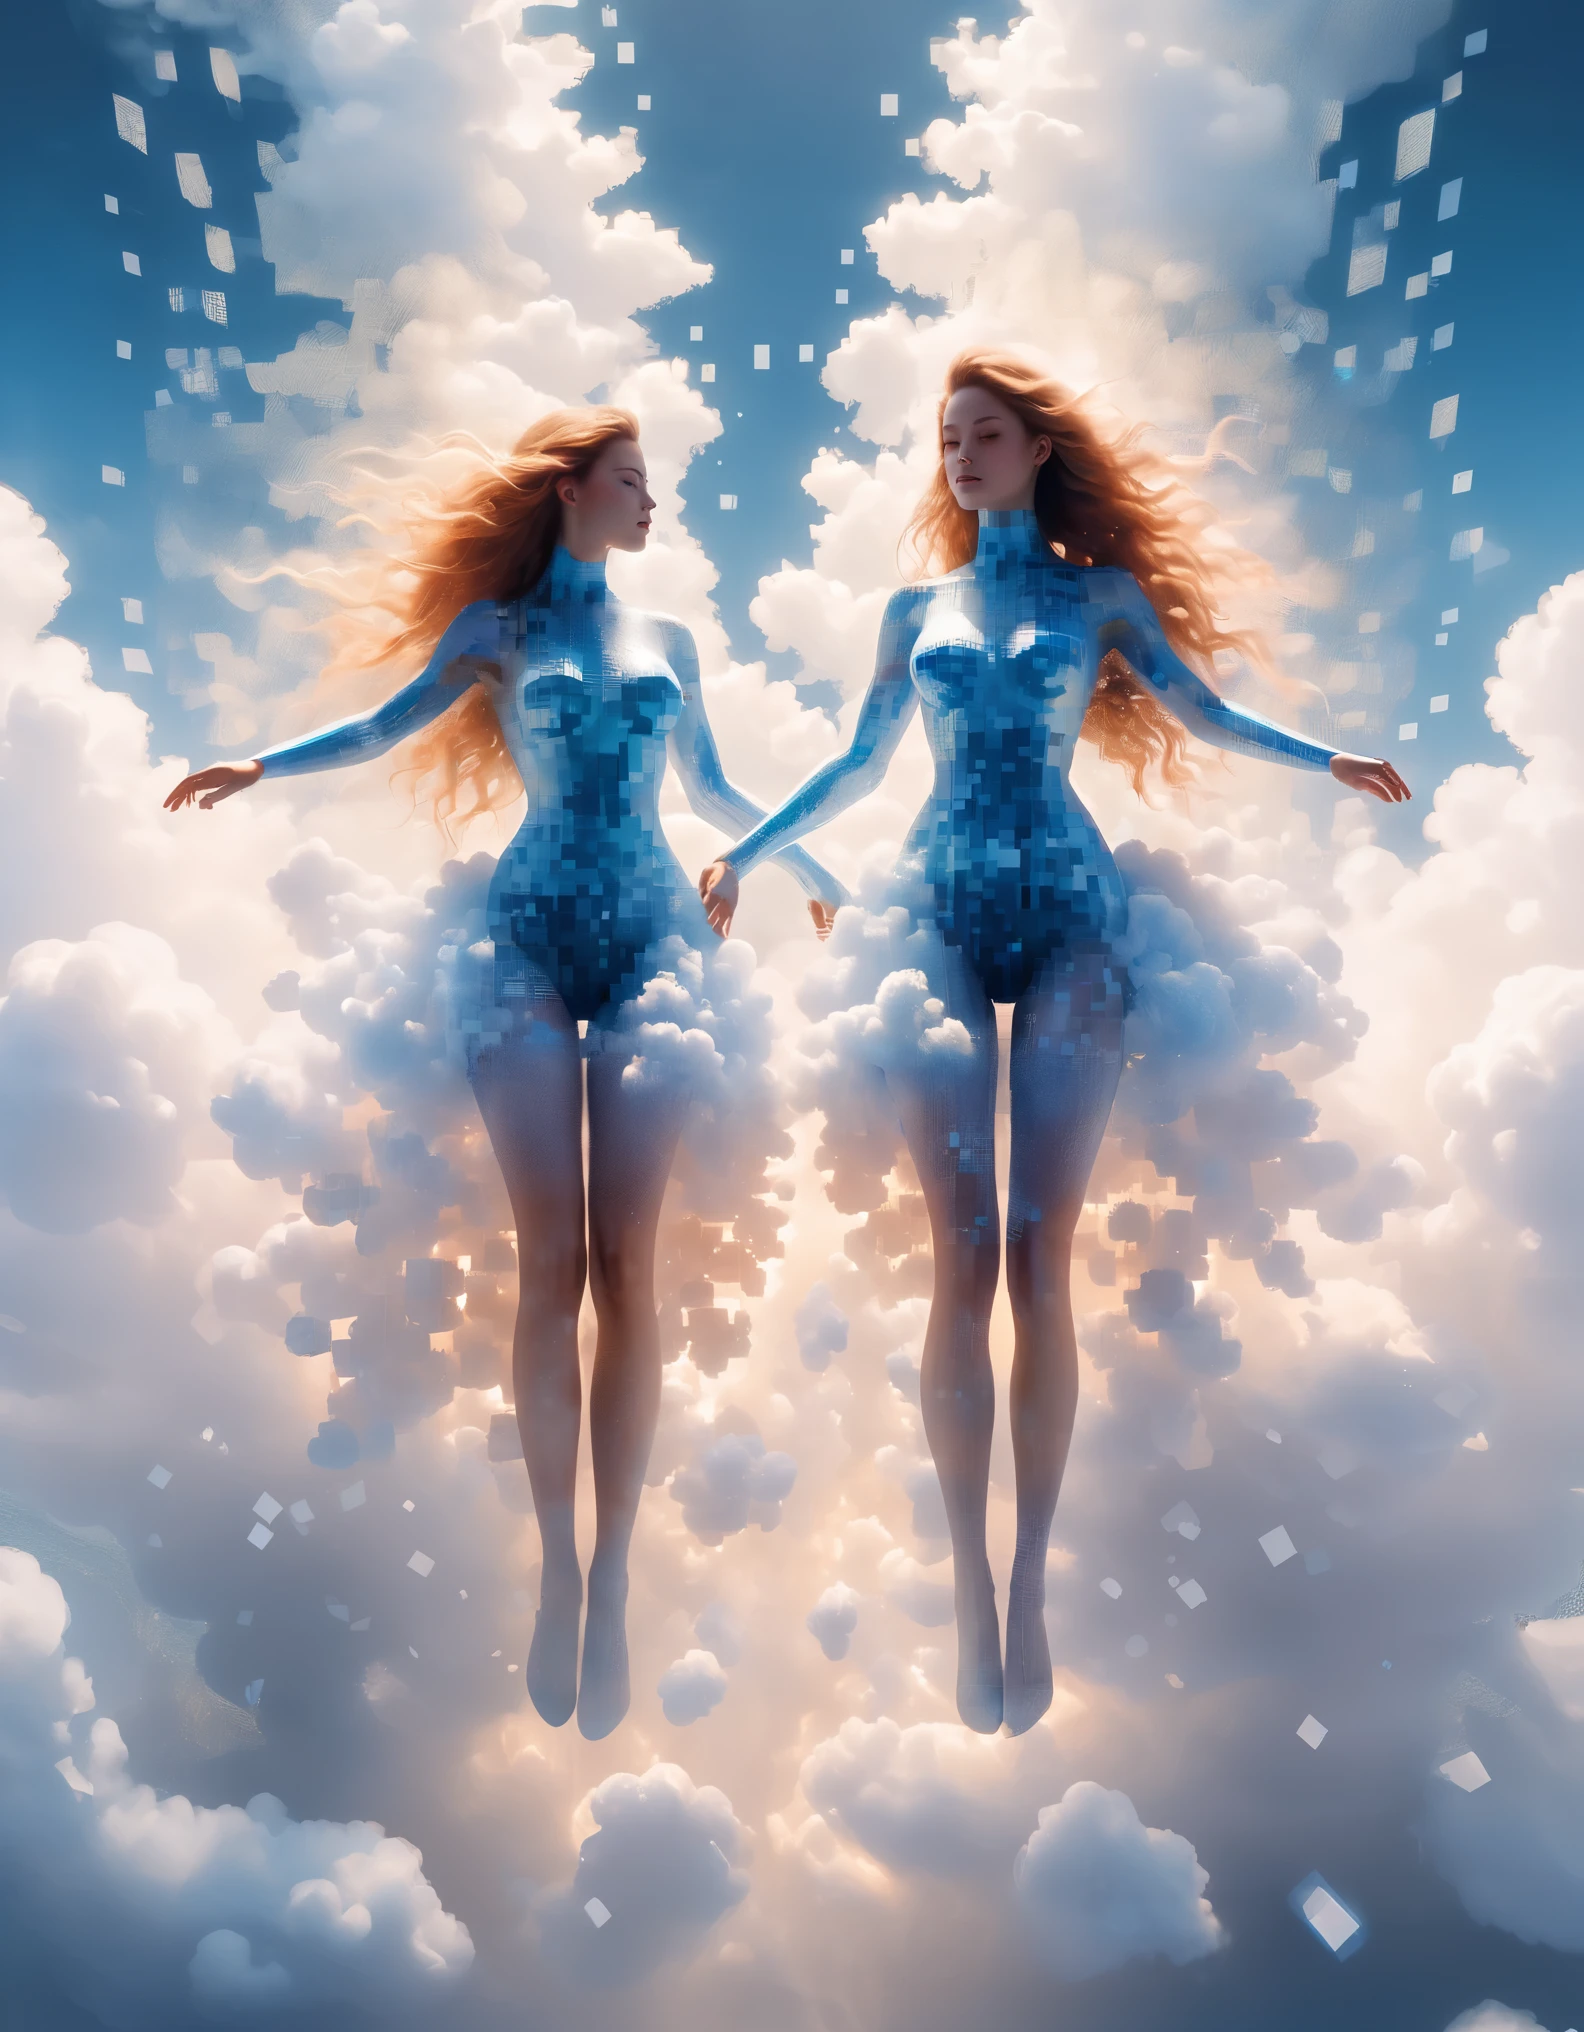 Синий градиент растворил пиксельную гигантскую пару красивых женщин, плывущих в облаках.，（все тело），3D-вокселы，Структура, которая изначально неповреждена, но постепенно распадается в воздухе.，Солнечный свет льется внутрь，Фоновое пространство голографической вселенной